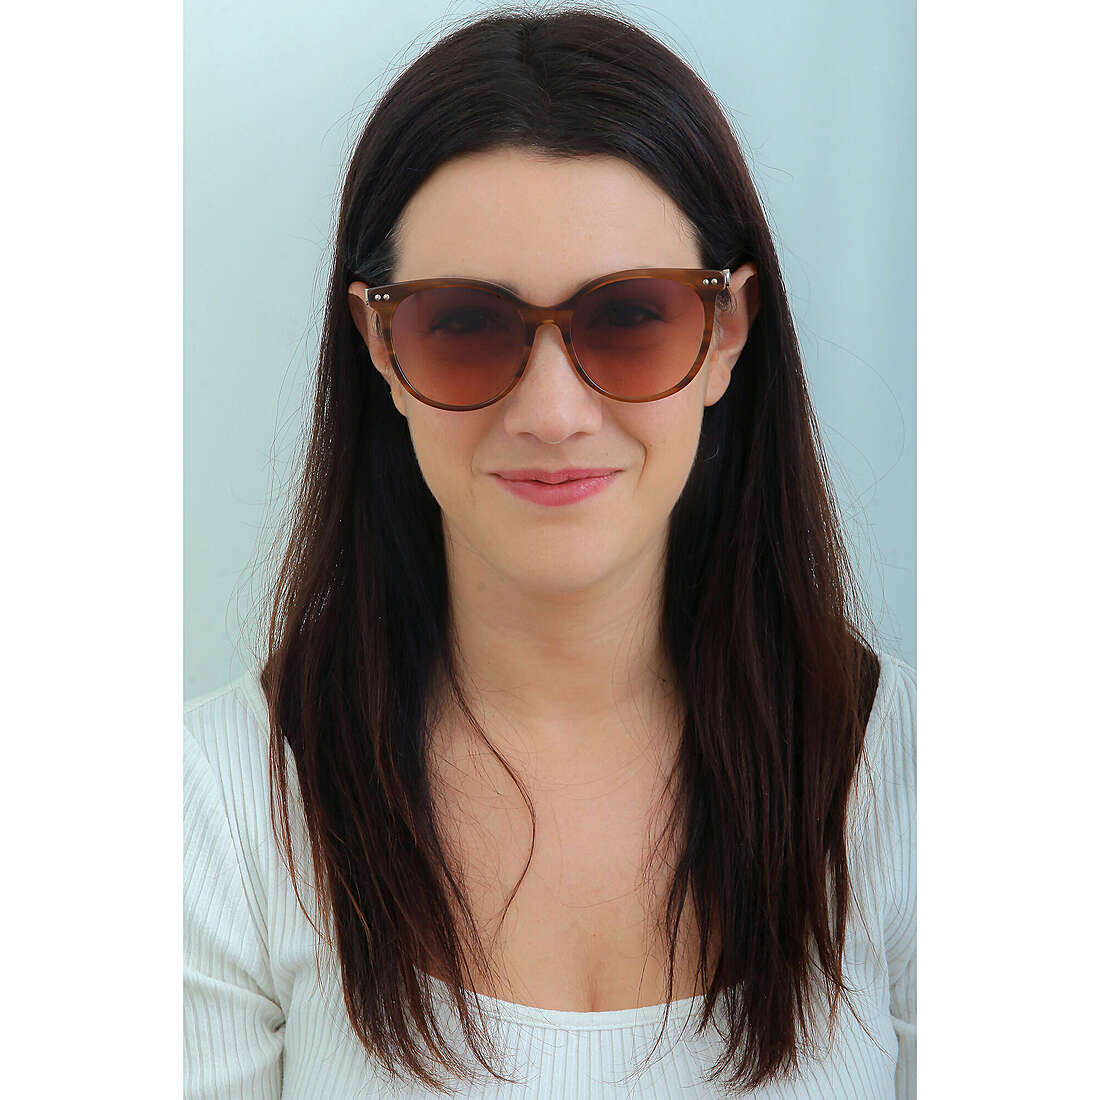 Twinset occhiali da sole donna STW0240GG7 indosso